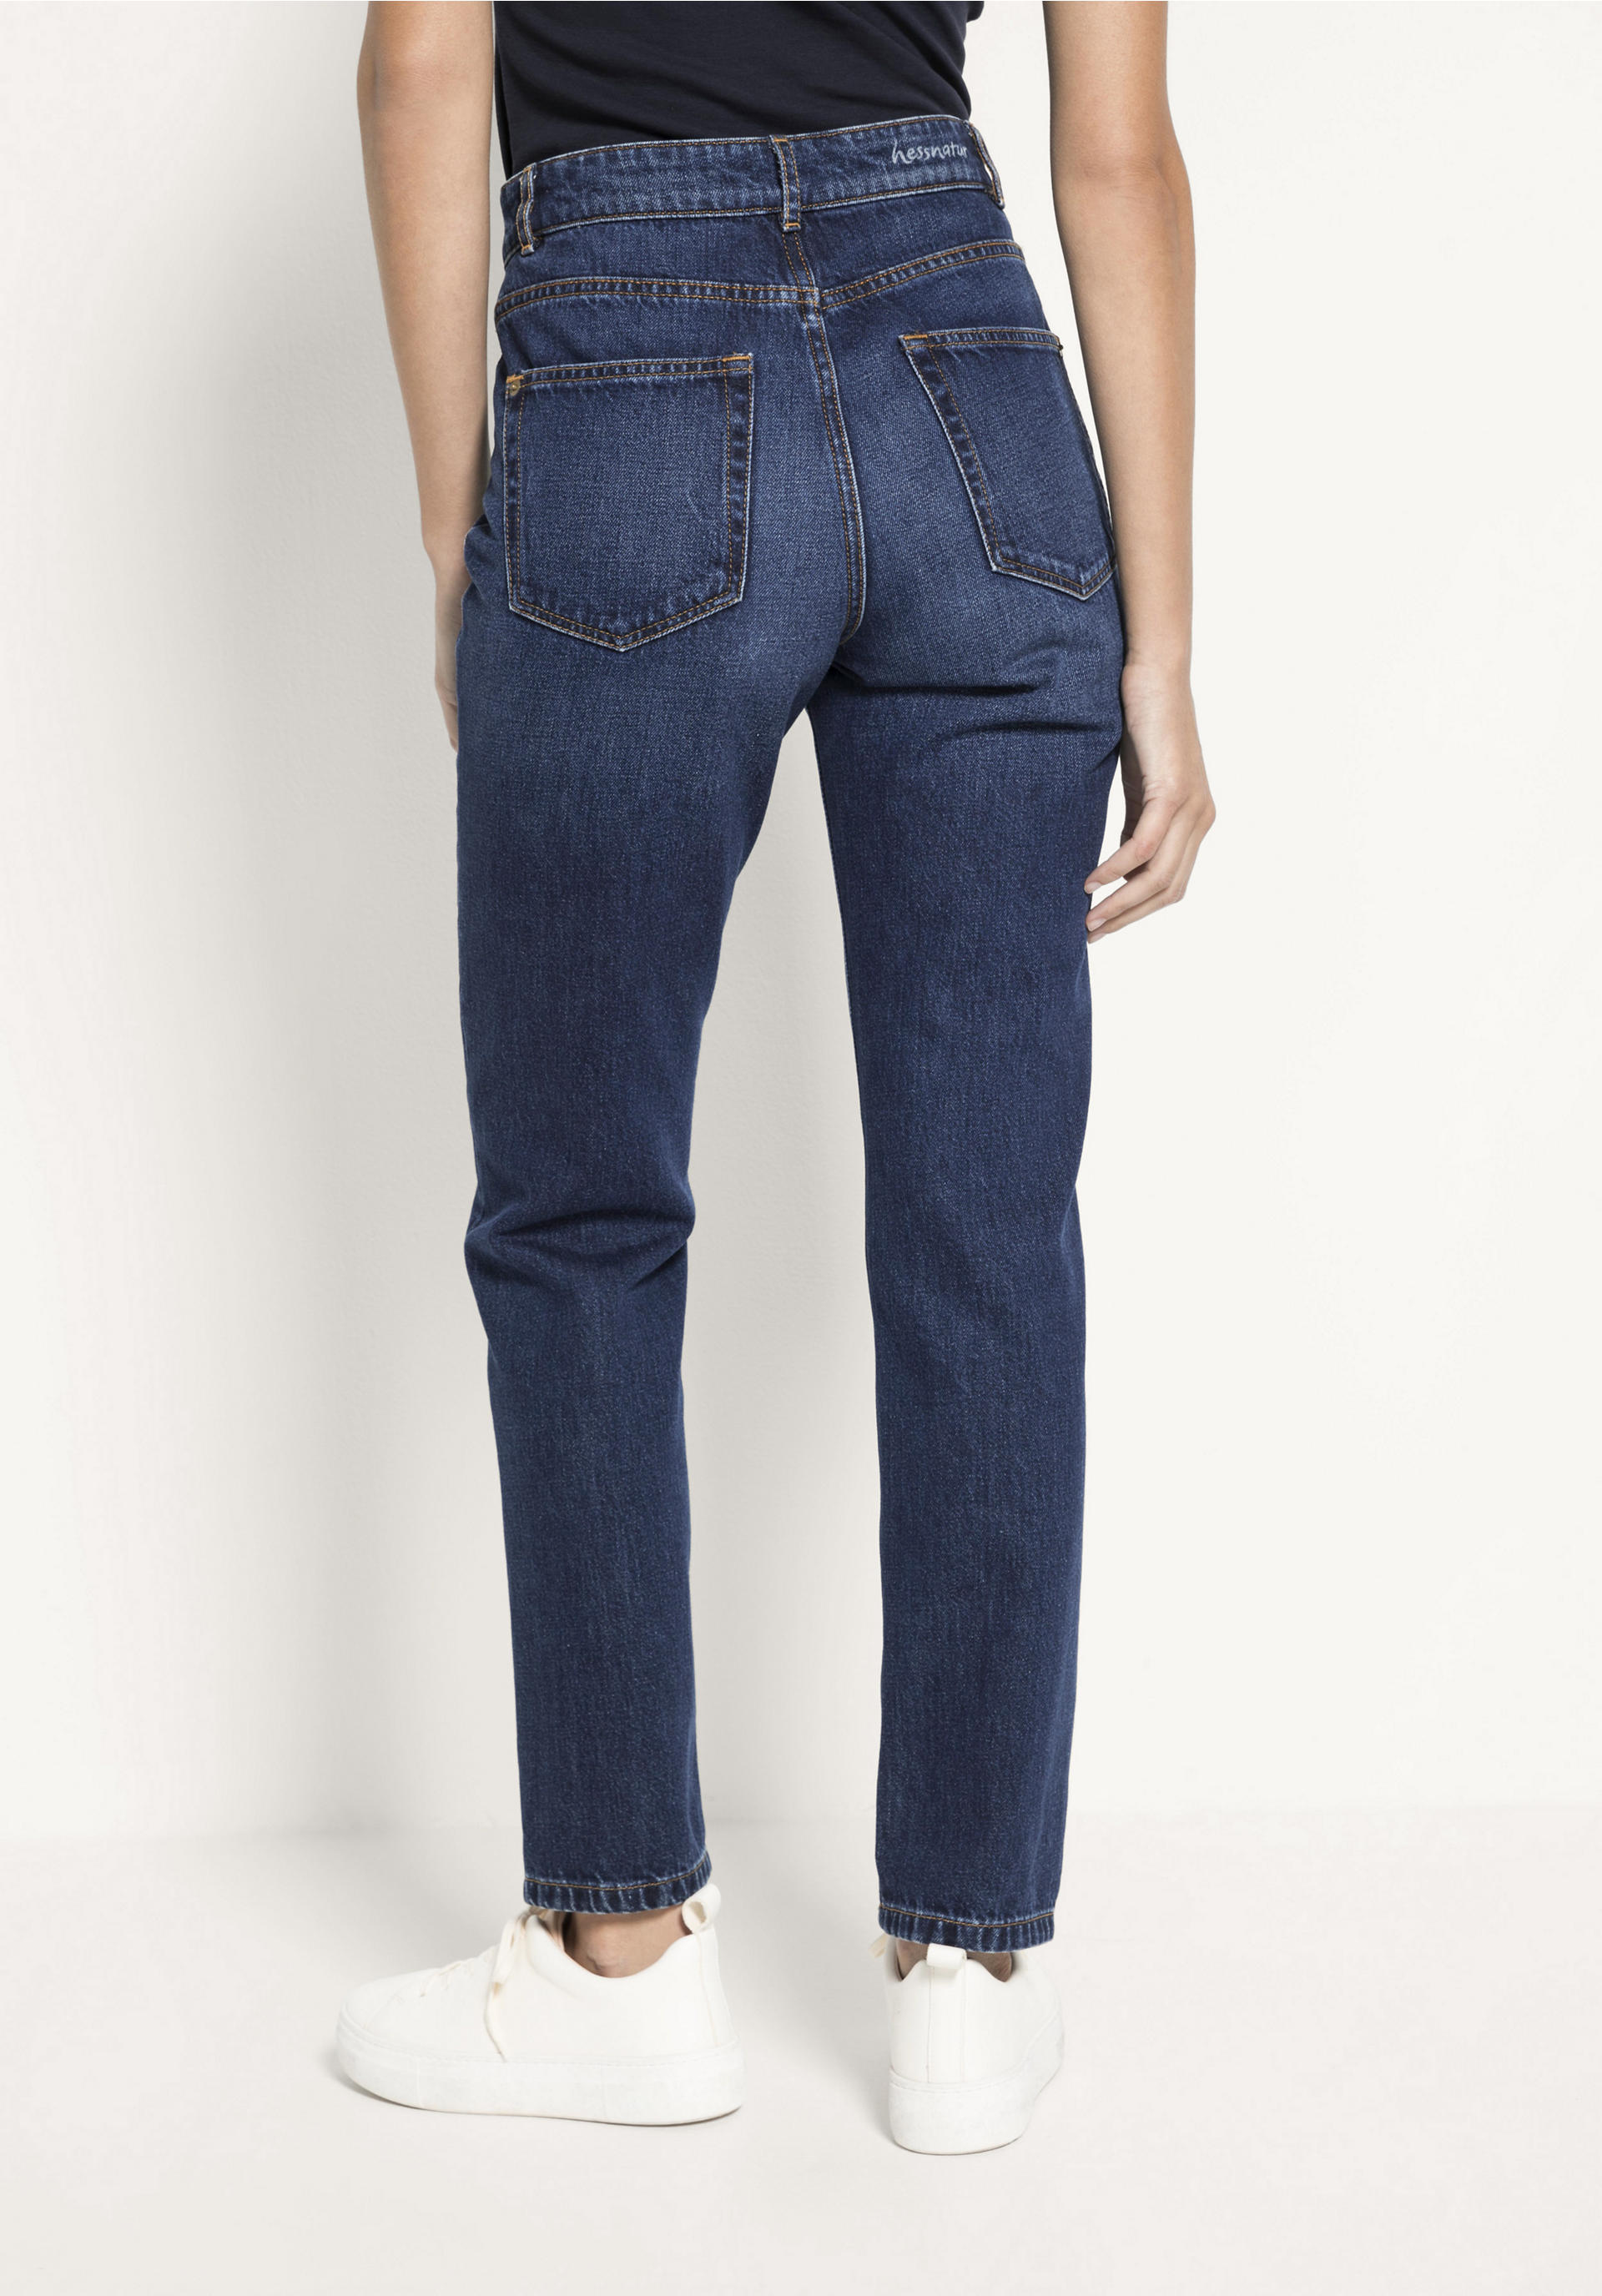 Damen Bekleidung Jeans Jeans mit gerader Passform 3x1 Baumwolle High-Rise Jeans Claudia Extreme in Schwarz 